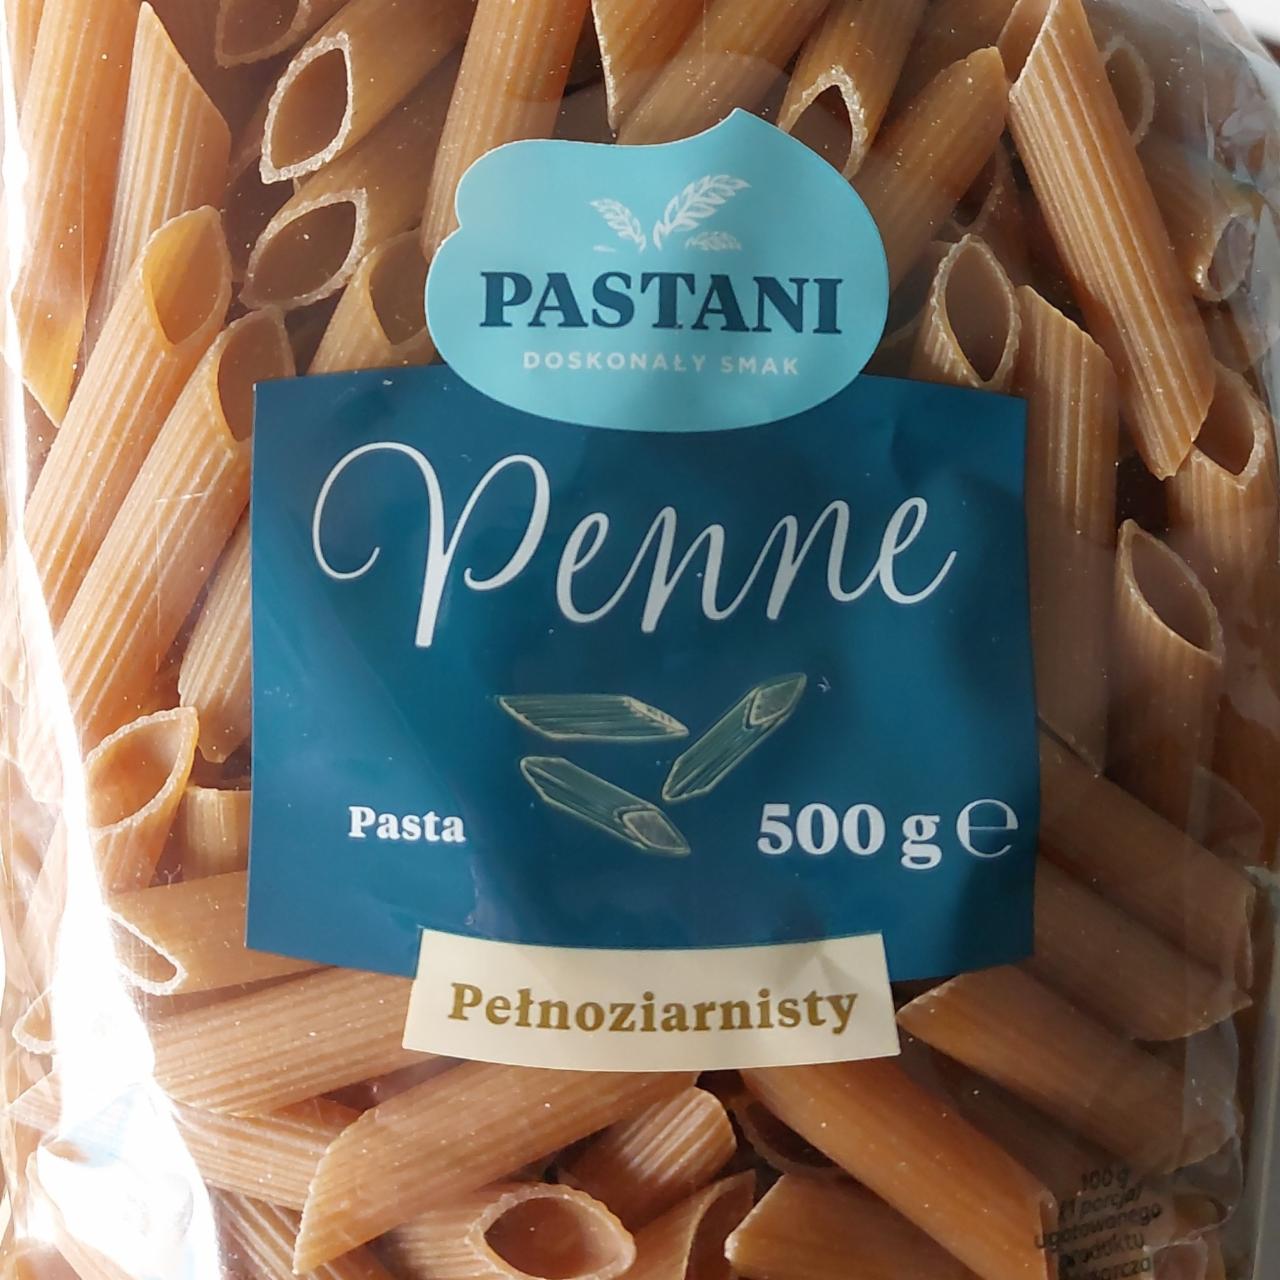 Zdjęcia - Penne pasta pełnoziarnisty Pastani